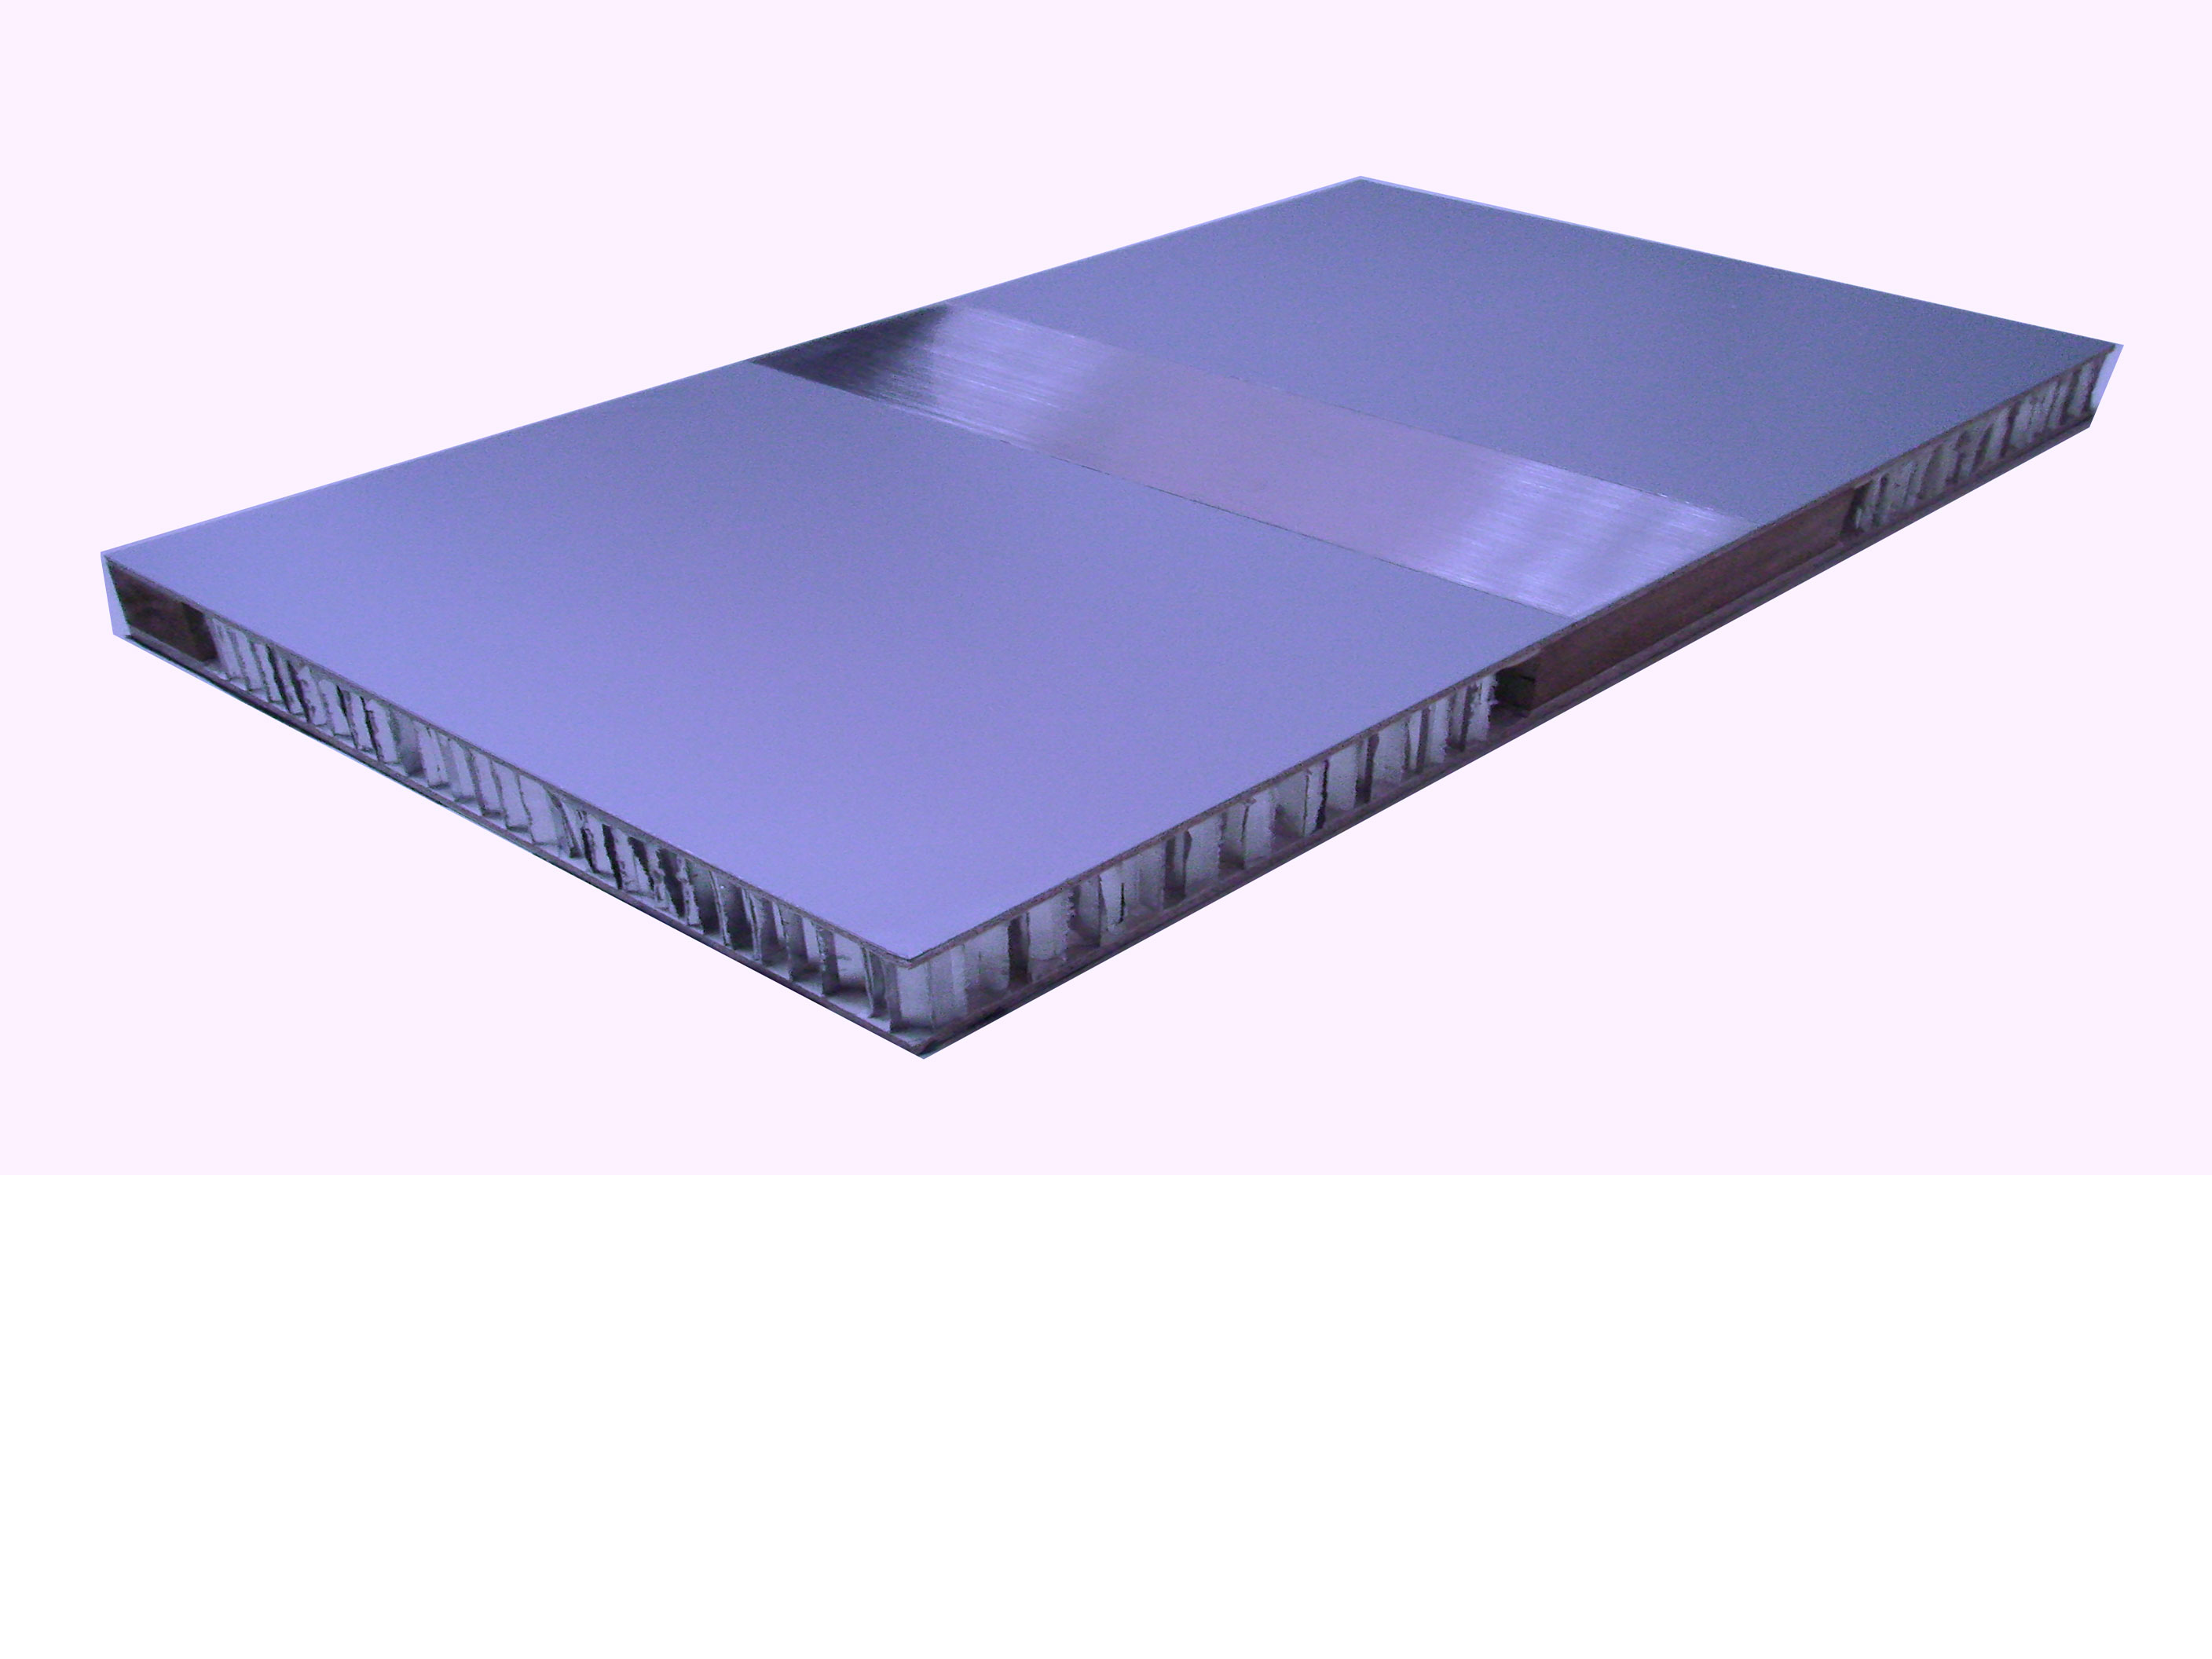 雷诺贝尔蜂窝铝板主要应用于橱柜台面,家具台面板等其面板主要选用